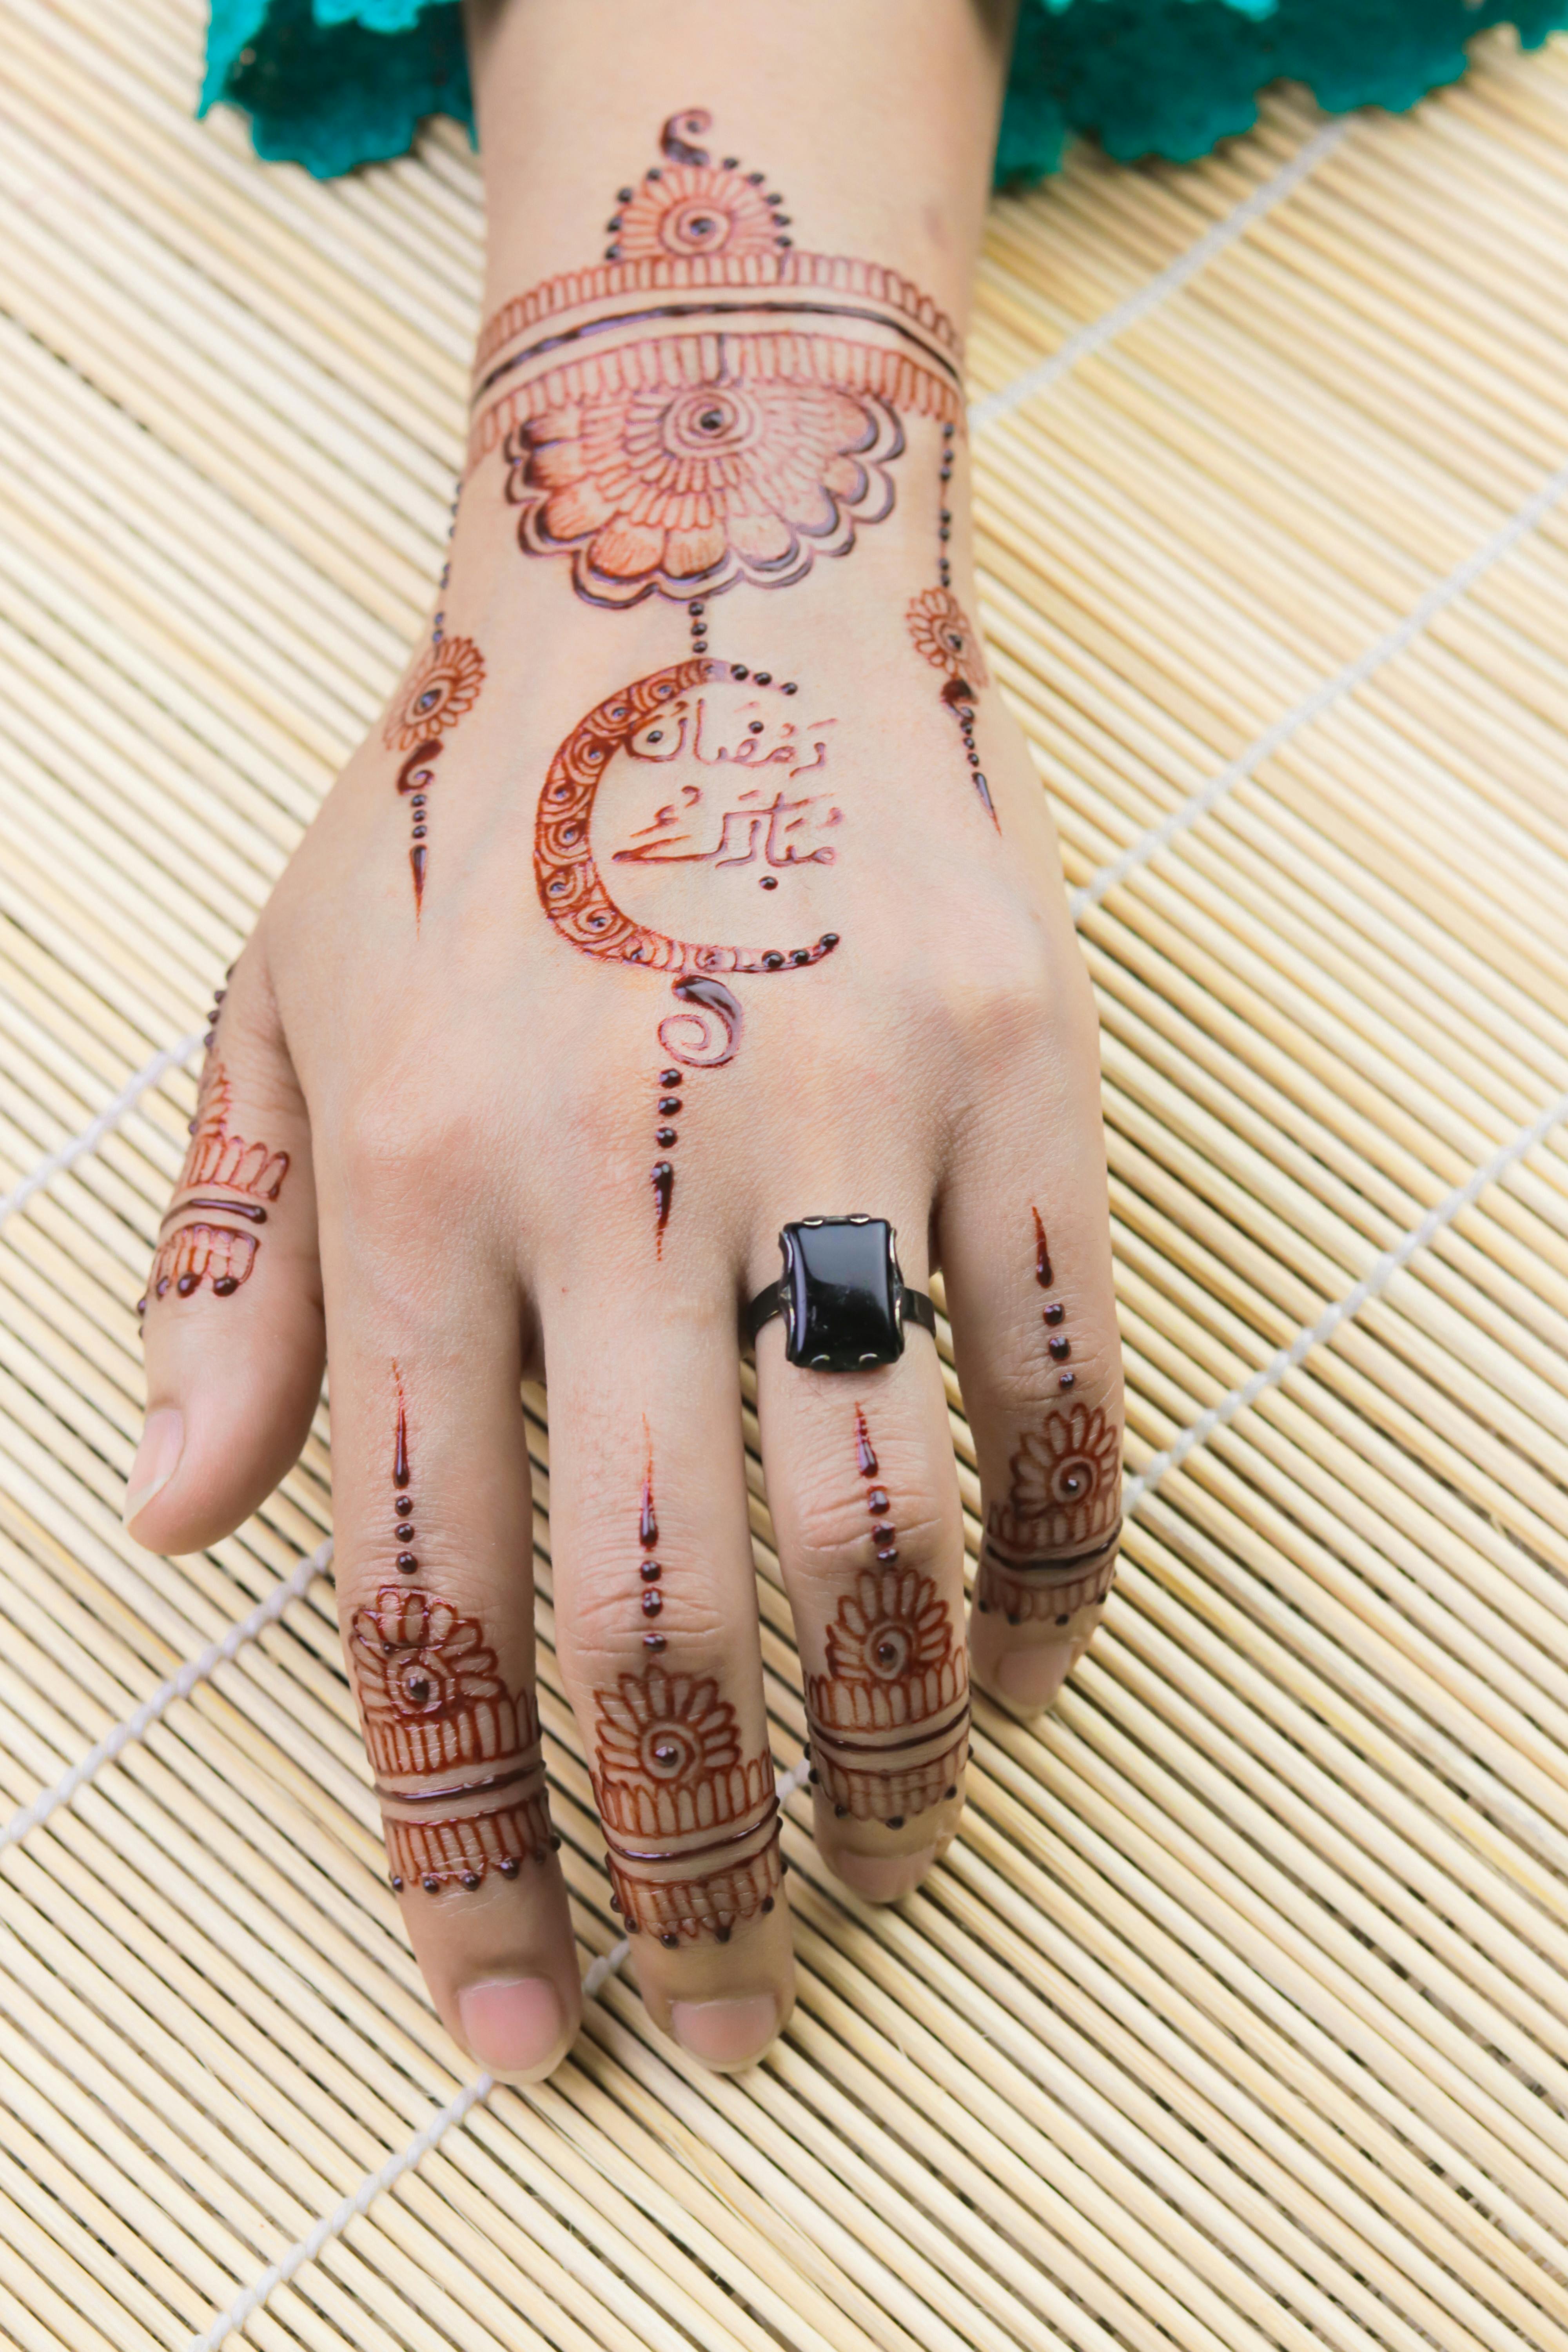 Tattoo Mehndi Designs वलटइन ड पर लगवए टट महद क य 5 डजइस   valentine day tattoo mehndi designs  HerZindagi